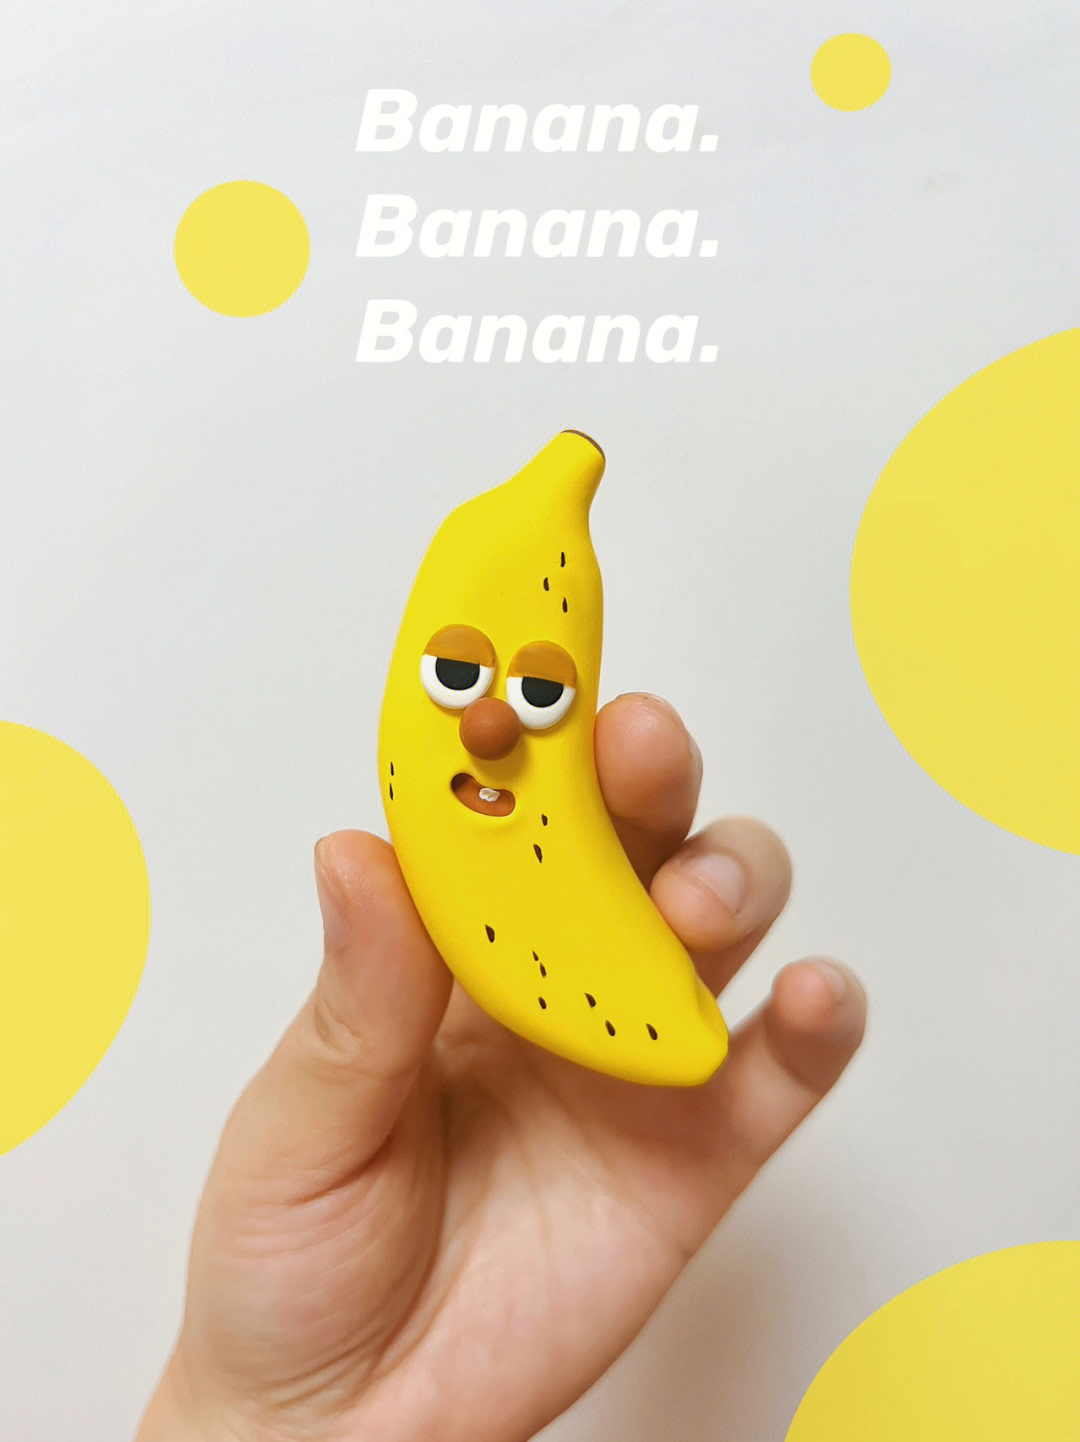 彩泥香蕉制作步骤图片图片